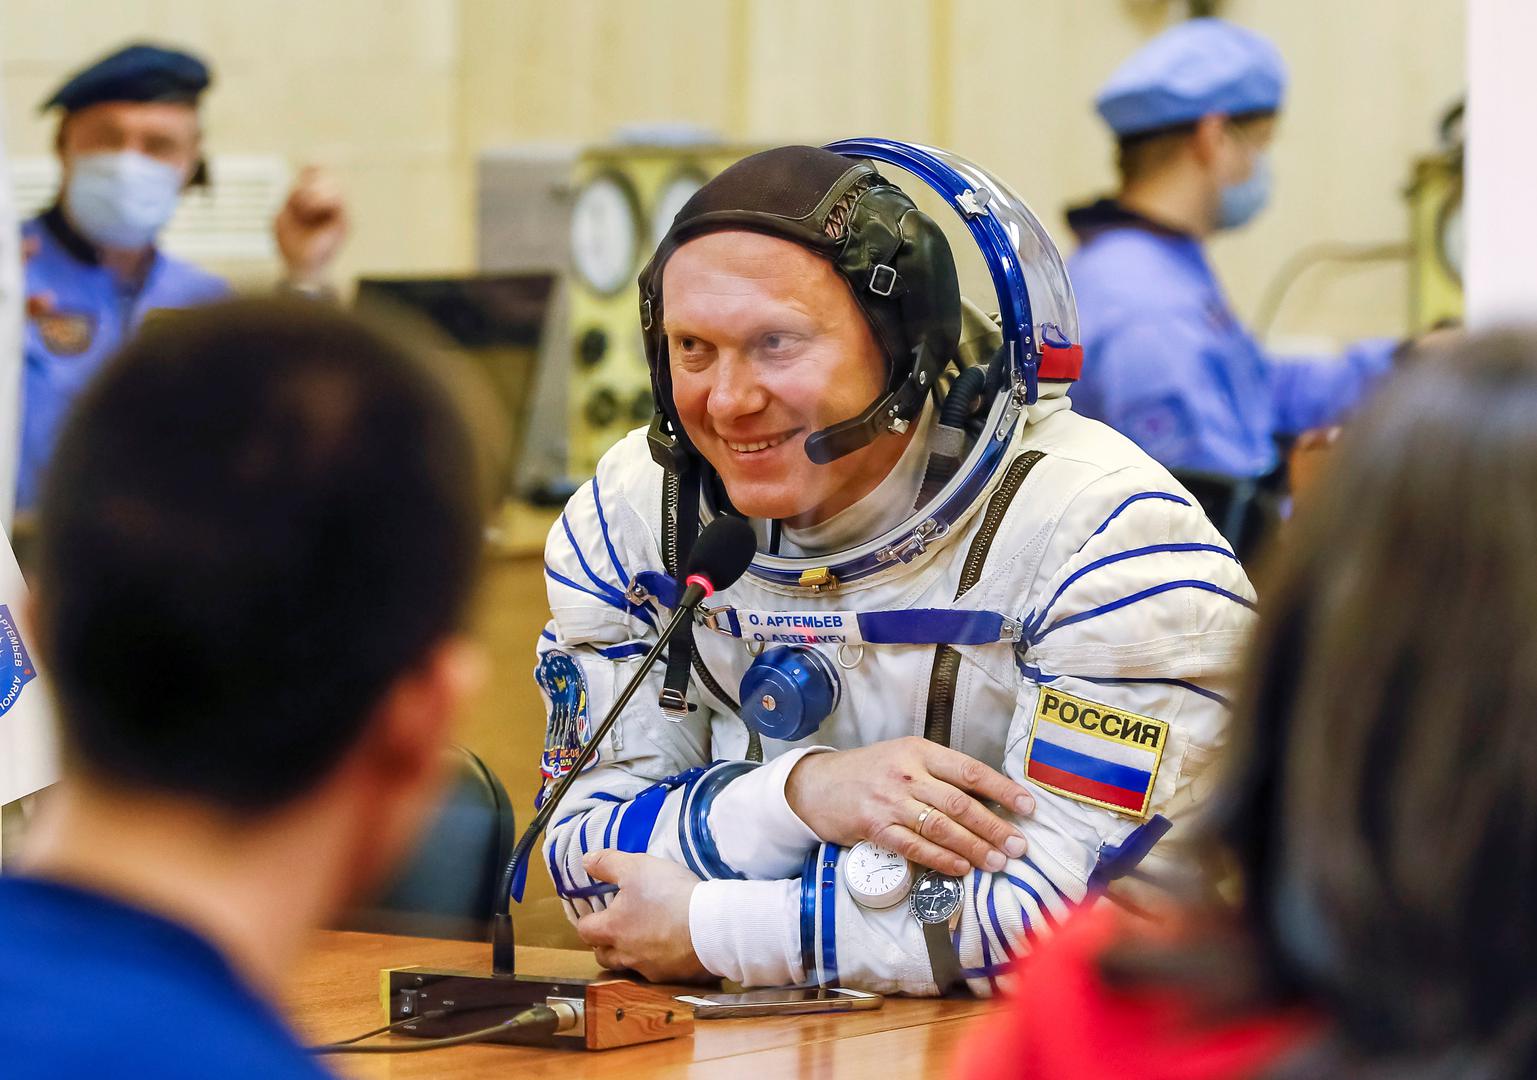 Ruski kozmonaut Oleg Artemjev je loptu ponio sa sobom kada se u ožujku pridružio posadi Međunarodne svemirske postaje.

